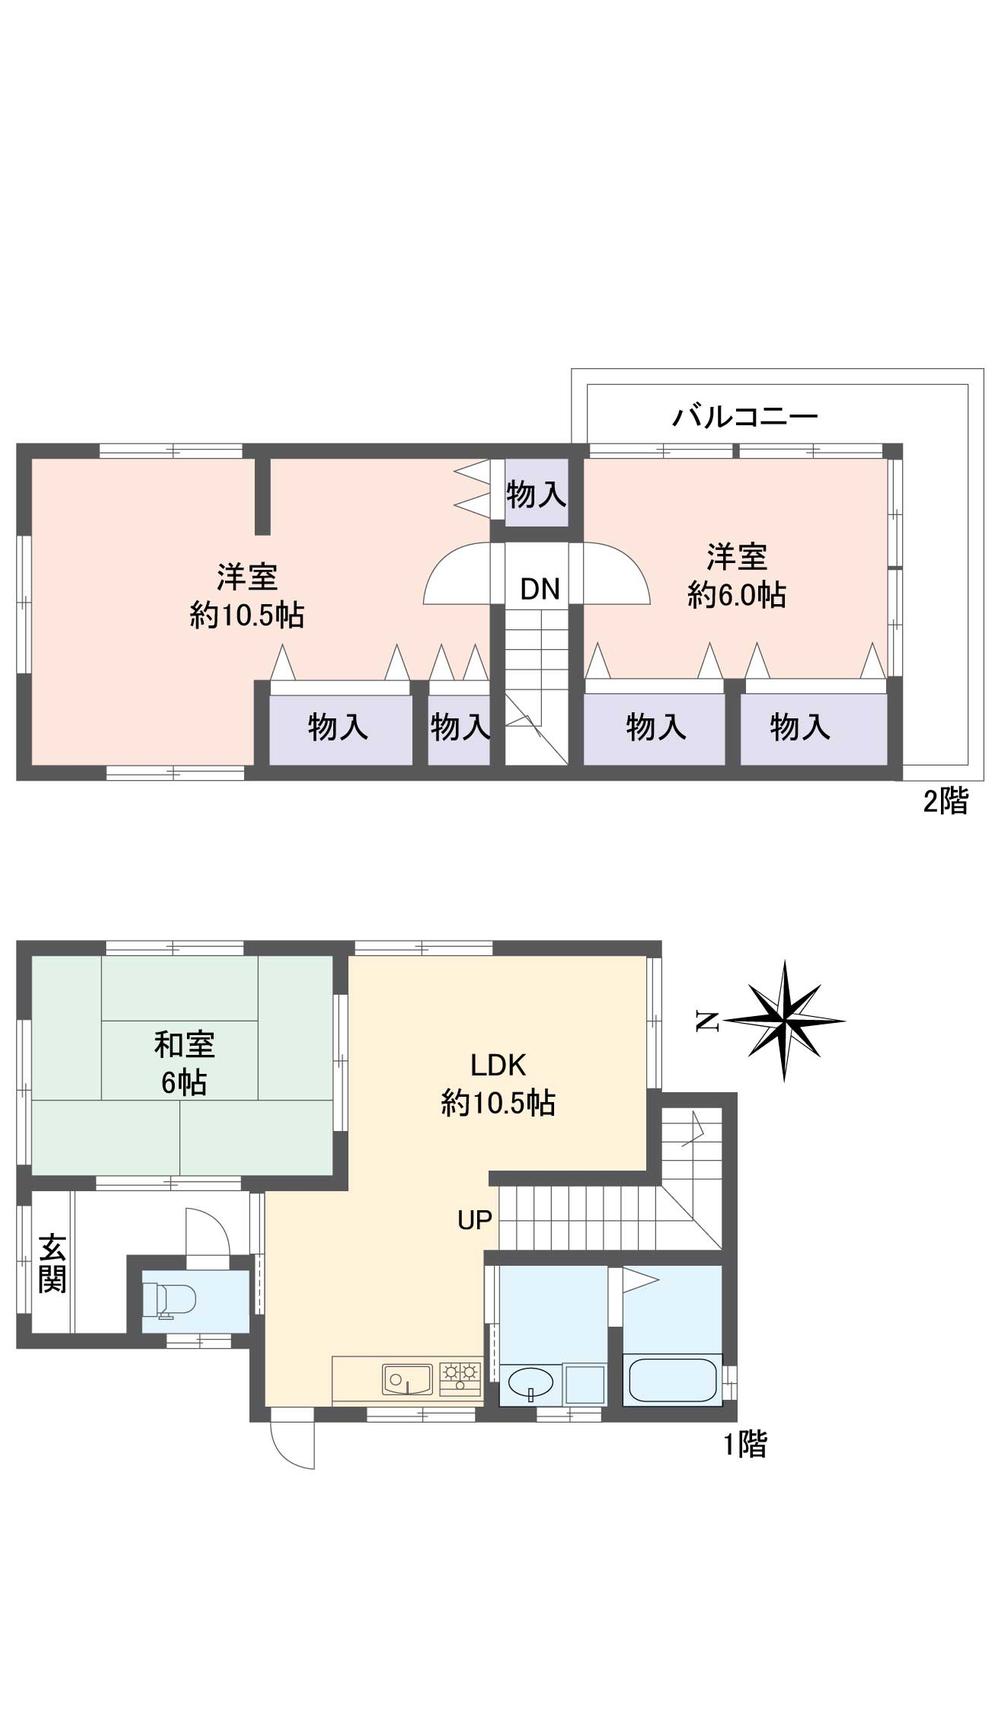 Floor plan. 11.9 million yen, 3LDK, Land area 122.73 sq m , Building area 67.68 sq m